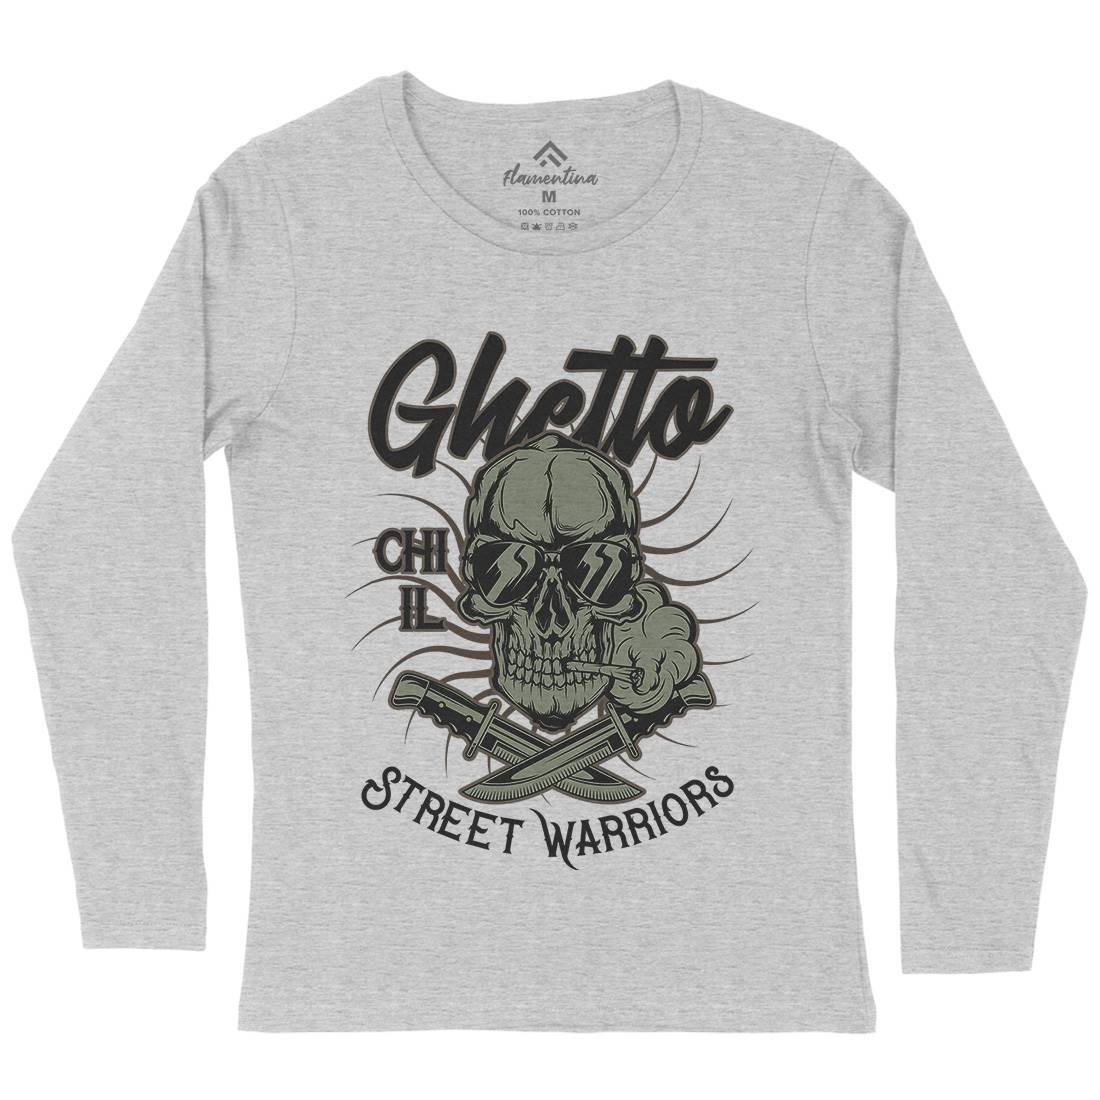 Ghetto Street Warriors Womens Long Sleeve T-Shirt Retro D937